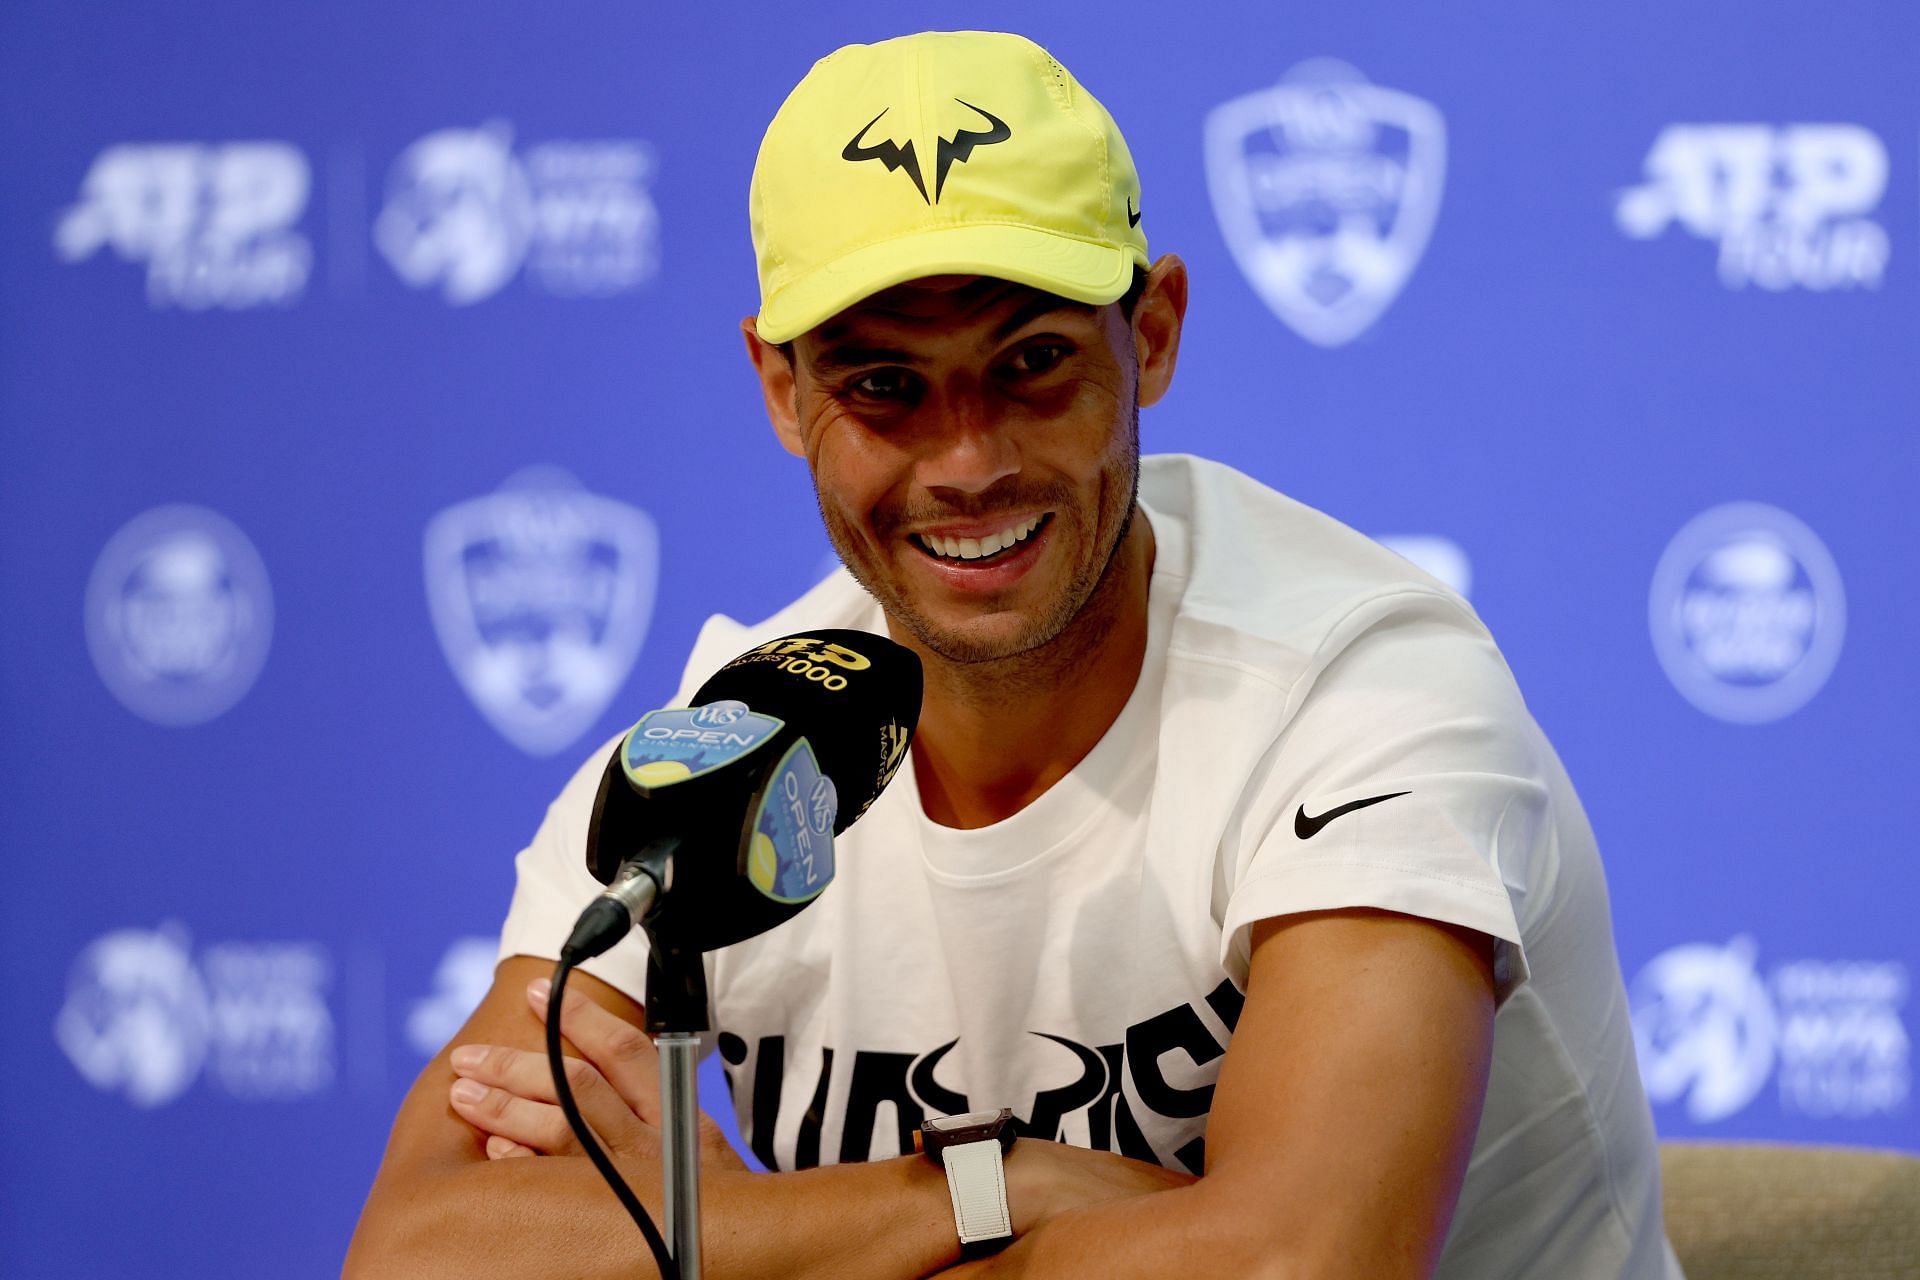 Rafael Nadal at a press conference - Day 2